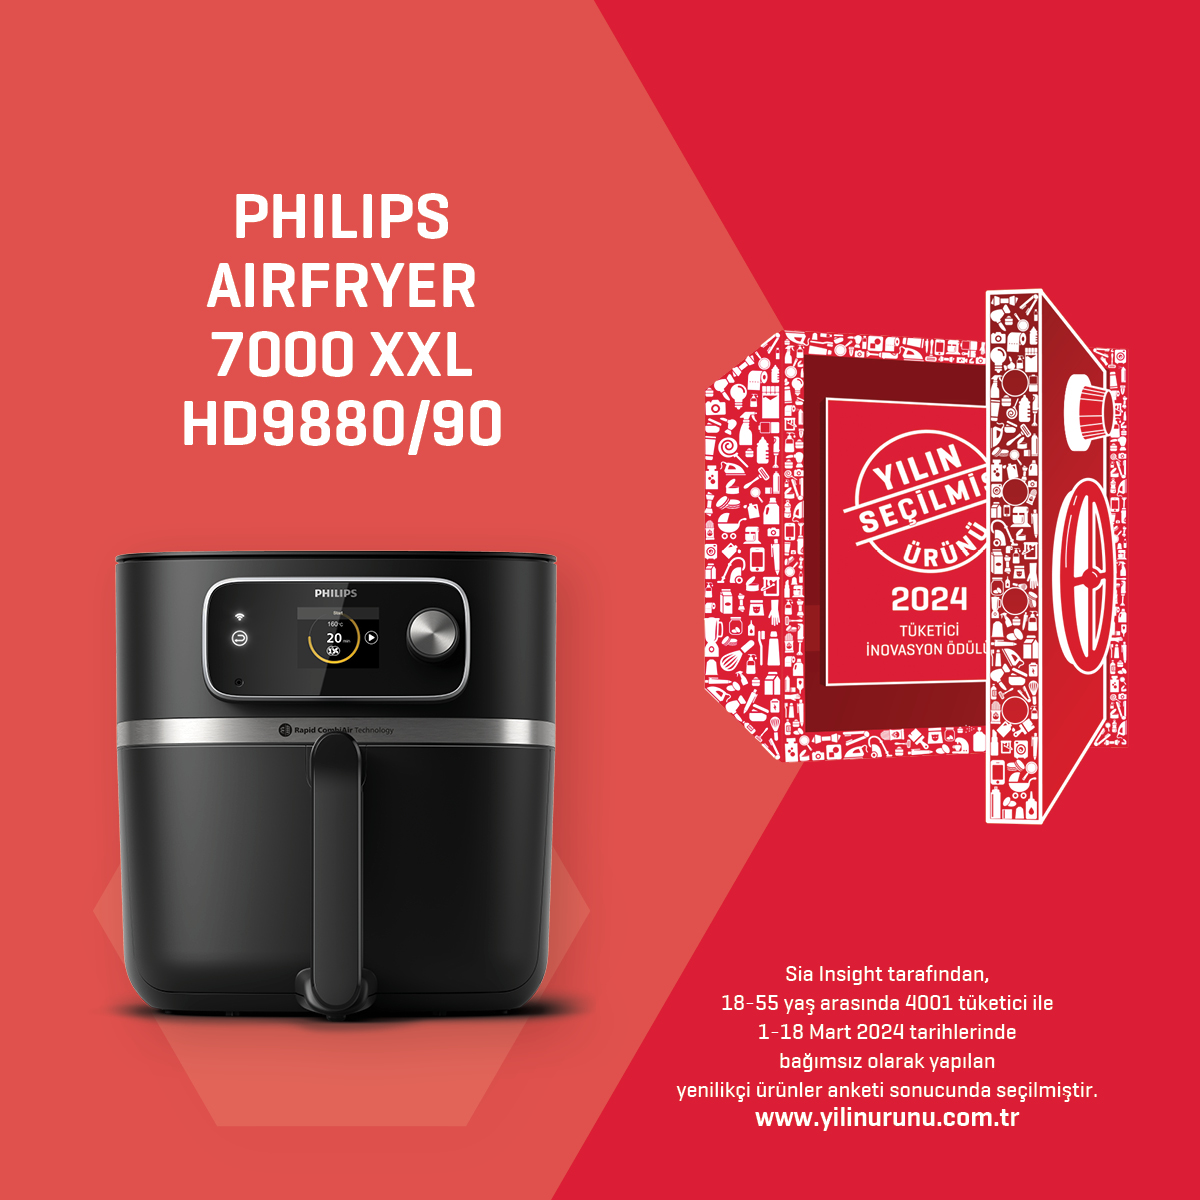 PhilipsAirfryer7000XXLHD988090